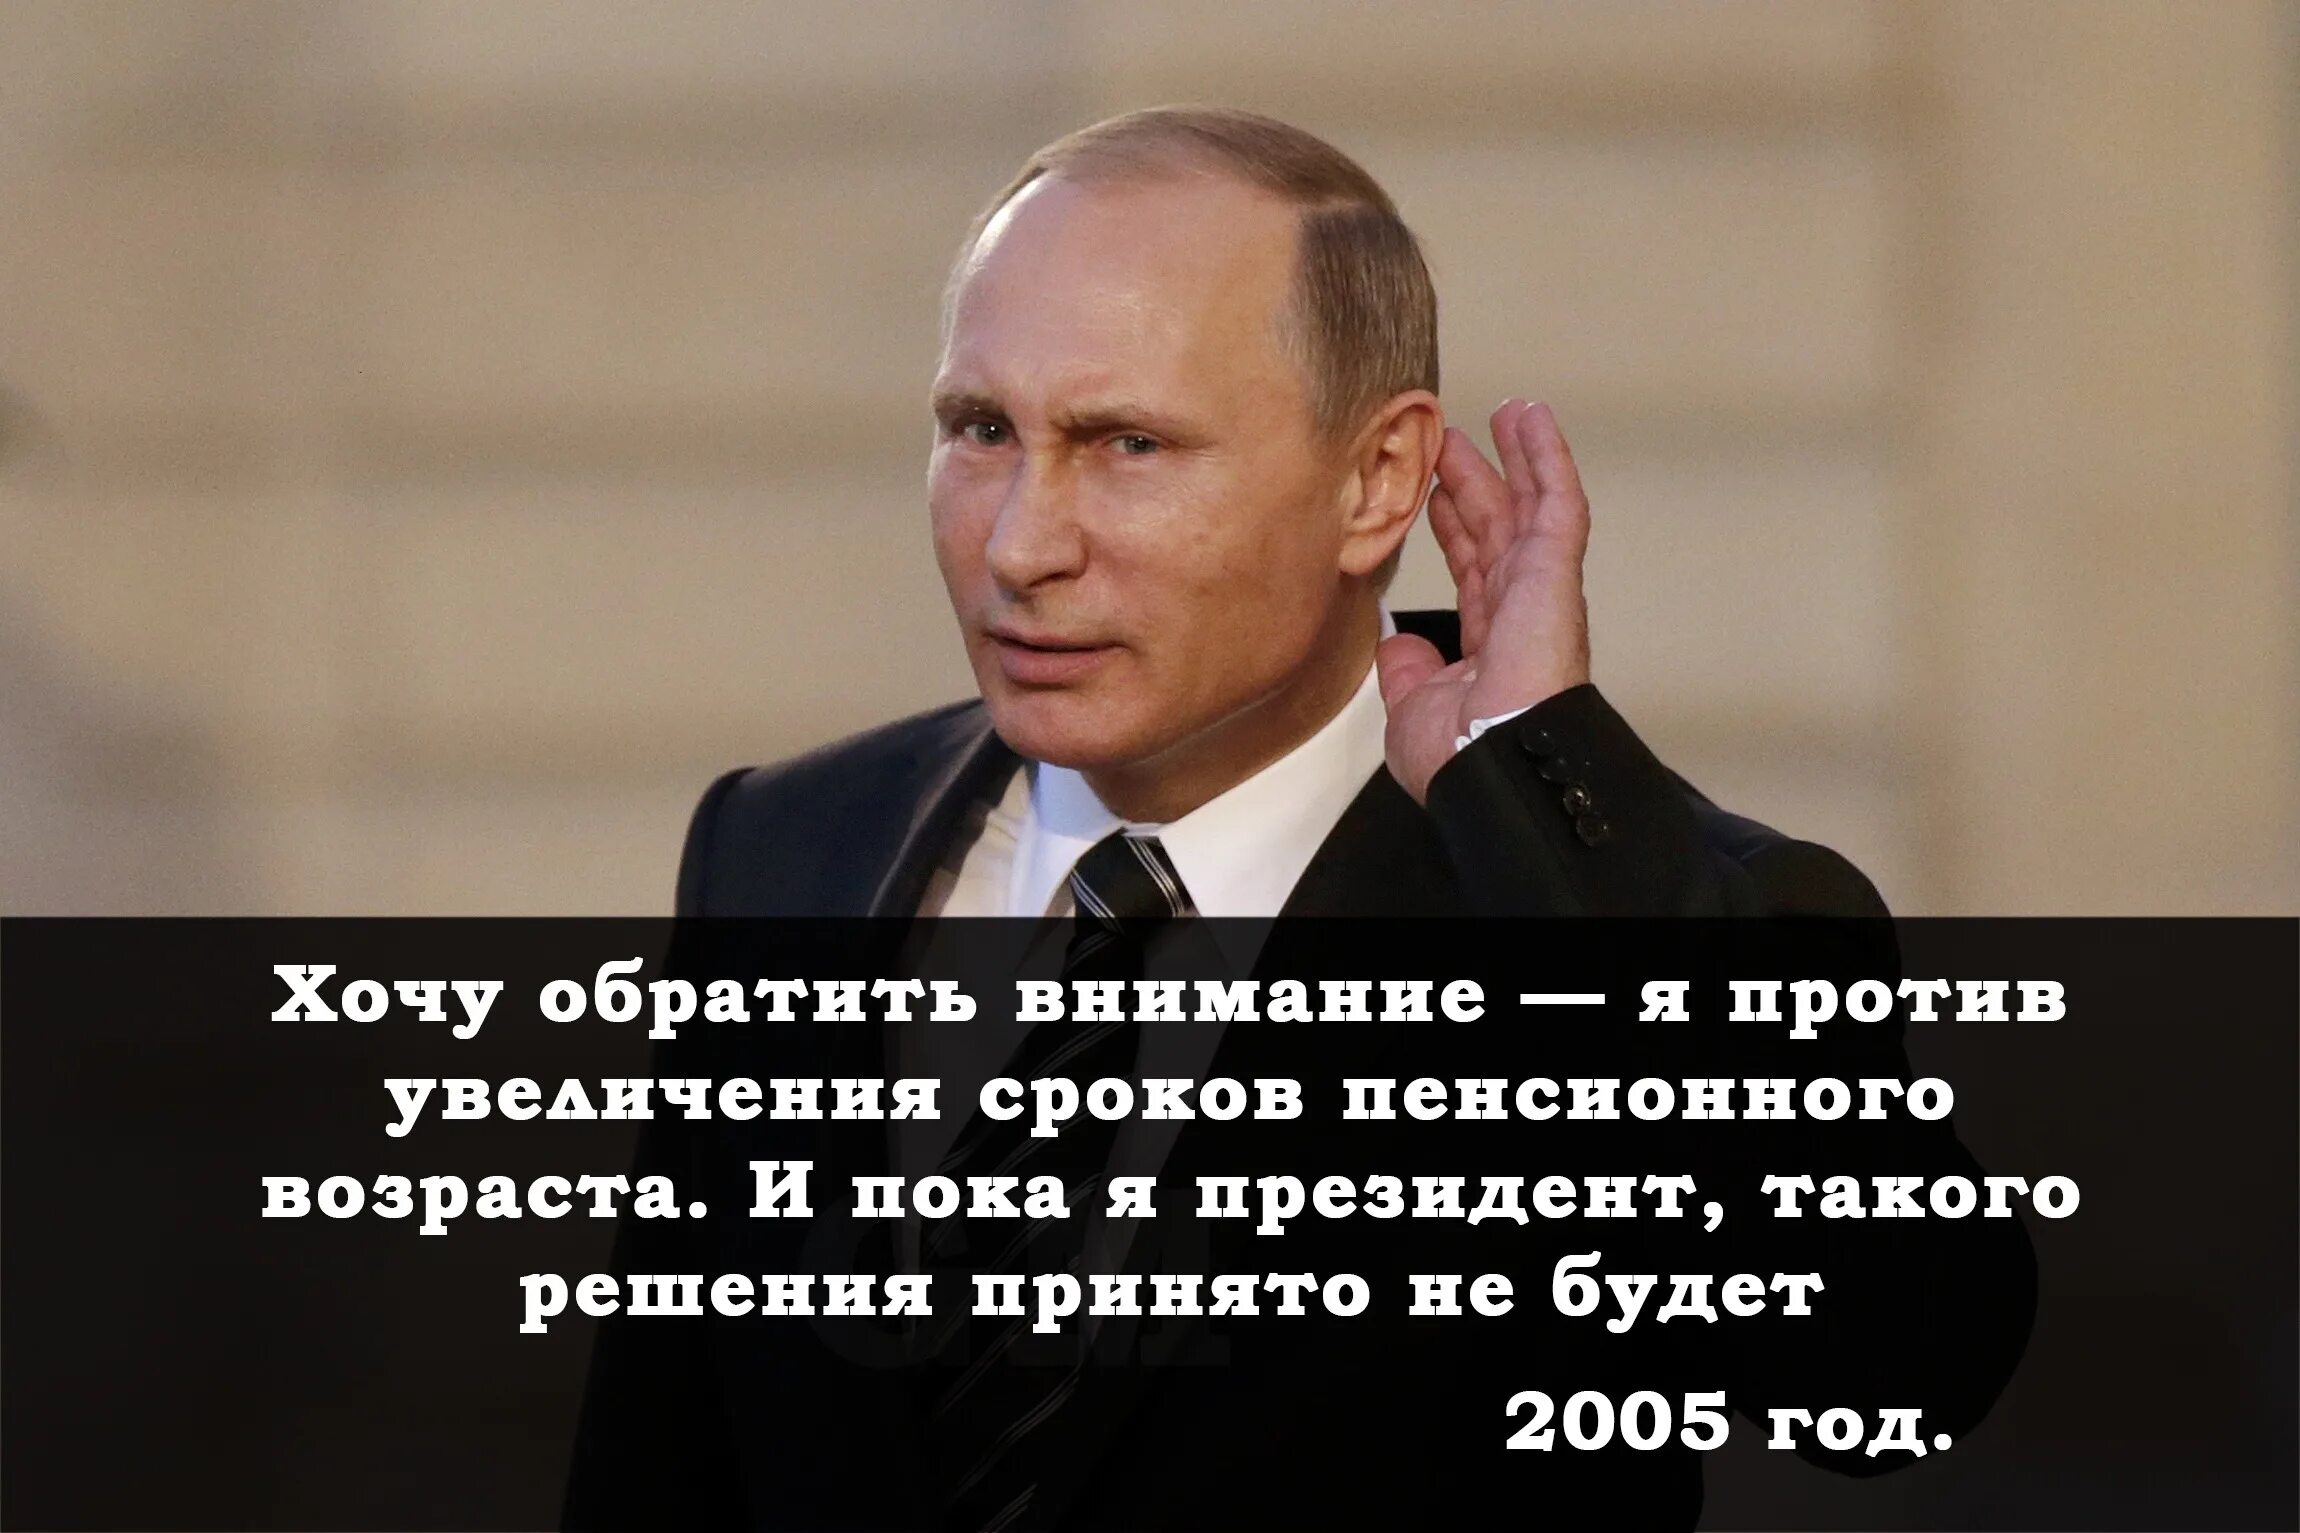 Высказывания против Путина. Фразы Путина.